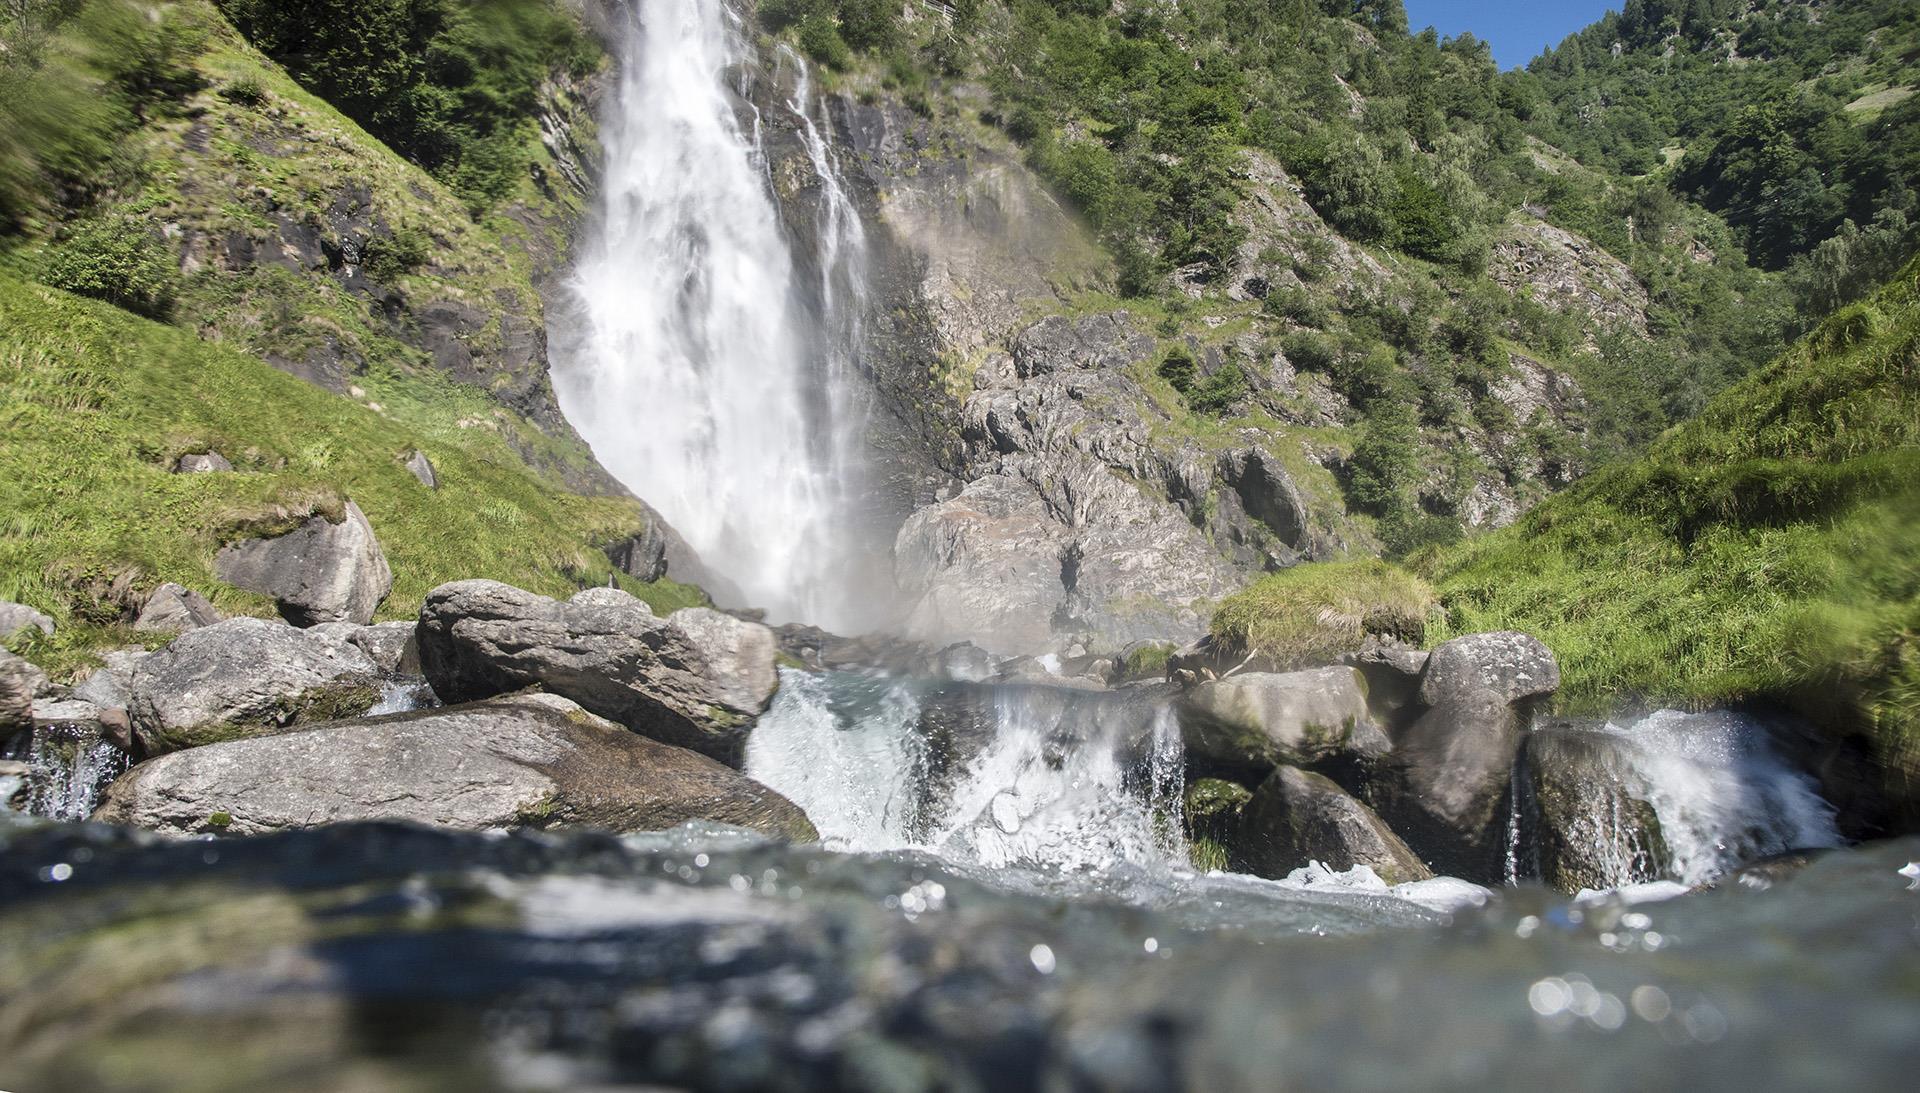 Natur & Kultur-Partschinser Wasserfall-Partschins-HR